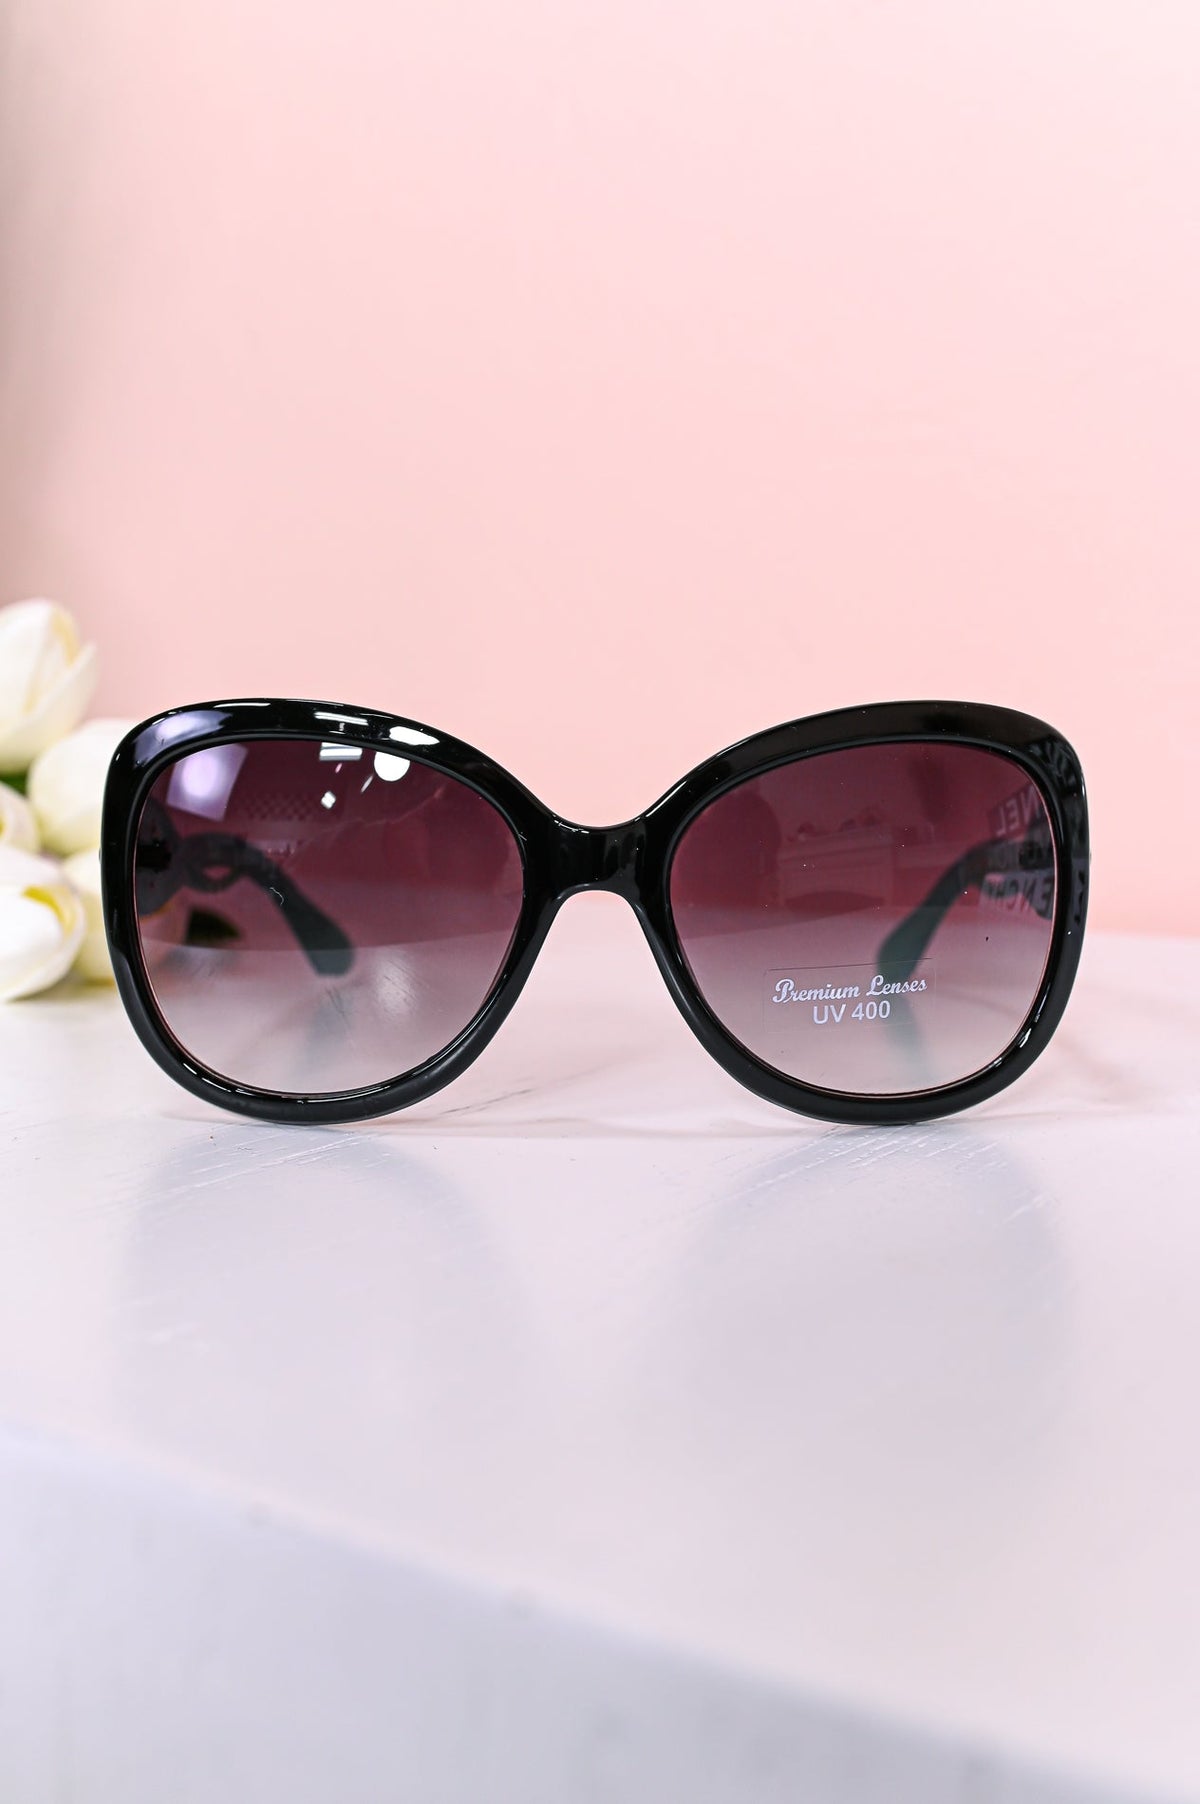 Black/Green/Printed Frames/Black Lens Sunglasses - SGL317BK